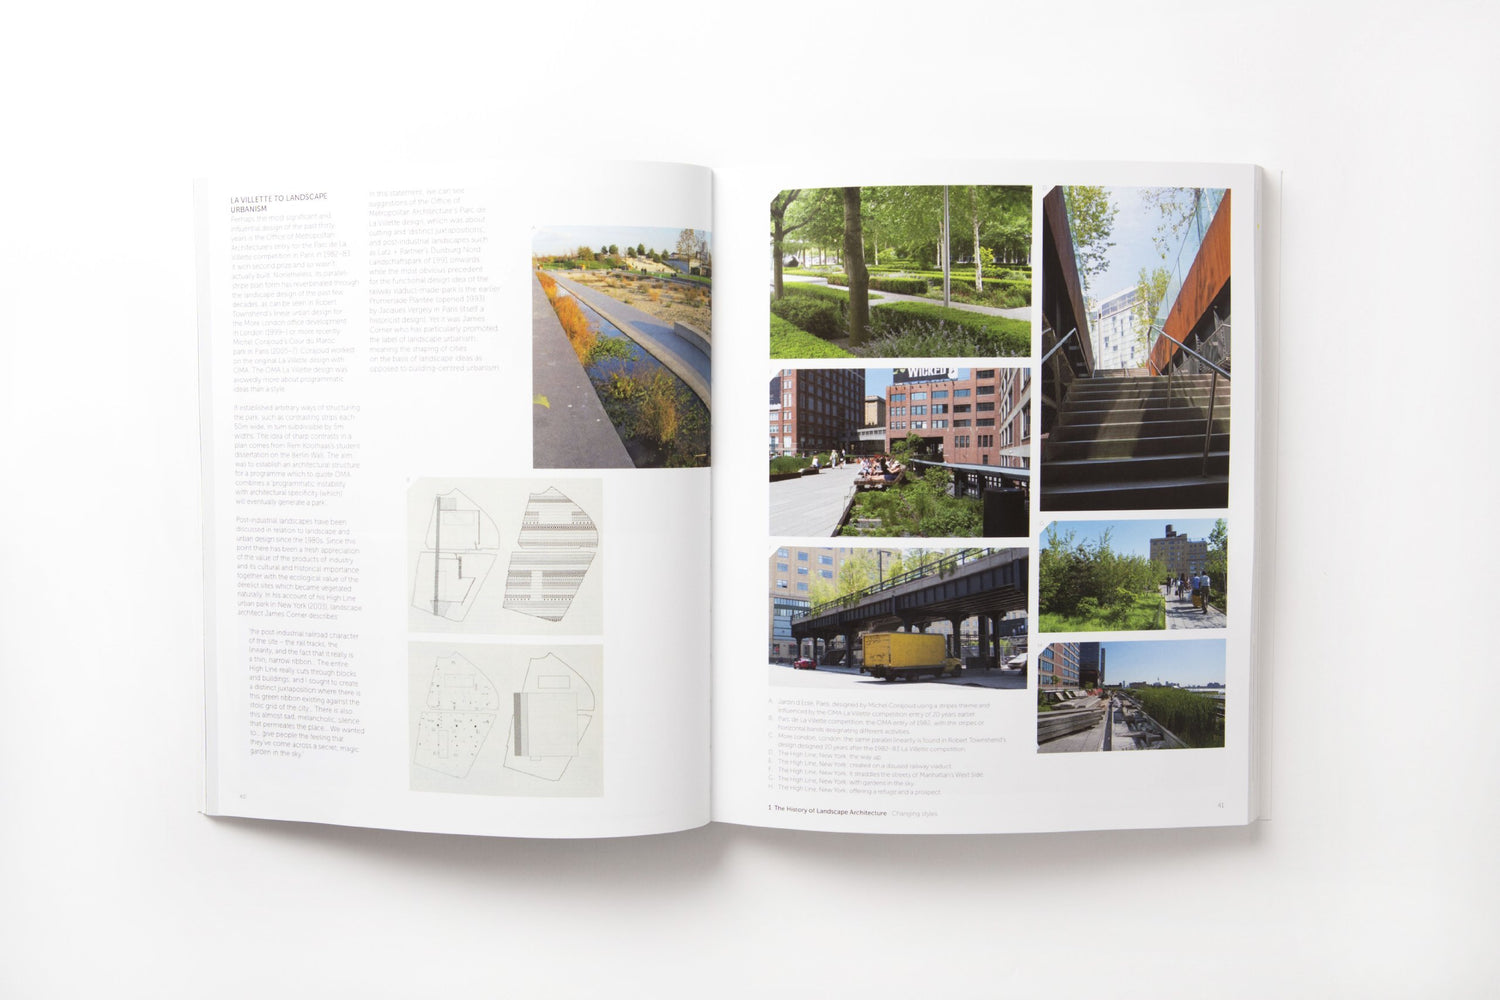 Landscape Architecture: An Introduction - D'Autores